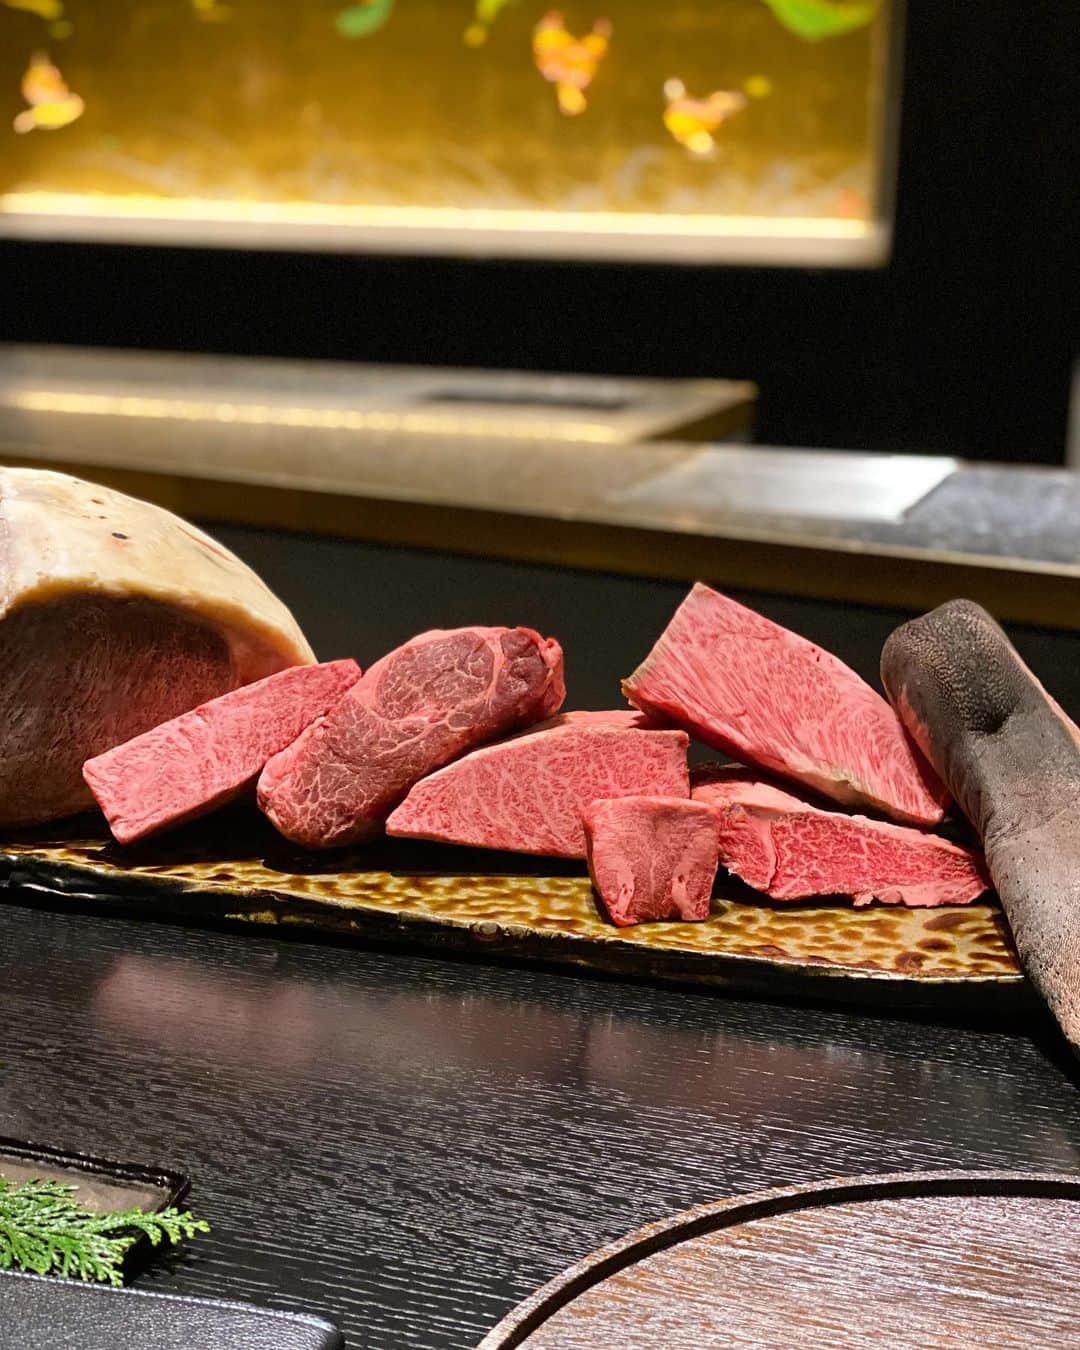 東京外食女のインスタグラム：「#肉といえば松田  奈良県大和八木にある肉割烹さん。  大和八木といえば奈良の観光に便利な土地みたいです。  京都駅から近鉄特急で50分くらい。 駅にはたくさんの飲食店やスーパーがあり 結構便利がいいところです。  駅から徒歩3分、おそらくまだ新しい FACEビルの1フロアを貸切。  お弟子さんたちはそこそこ人数がいて、 飲み物を聞くタイミングがばっちり。  客層は都会からきているというよりは ガッツリ地元の方々のよう。 同伴などなど。  ワインはリーズナブルな価格設定で、 その他ドリンクは特に都内と変わらないかな？  料理と料理の時間が結構長くて、 ついついドリンクが進みます。笑  一つ一つ丁寧に仕上げてくださいます。うれしい。  さまざまな調理法というよりは さまざまな味付けや飾り付けが楽しめました。  ひとつひとつが美しい。  お皿も焼き物センスが光ります🪭 品がいいです。  シャッターチャンスが多いので 充電必須！🔋  #肉といえば松田奈良本店  #肉割烹 #肉 #肉料理  #foodstagram  #foodphotography  #japanesefood  #奈良グルメ  #奈良観光 #奈良旅行  #nara #関西グルメ  #橿原グルメ  #東京外食女」